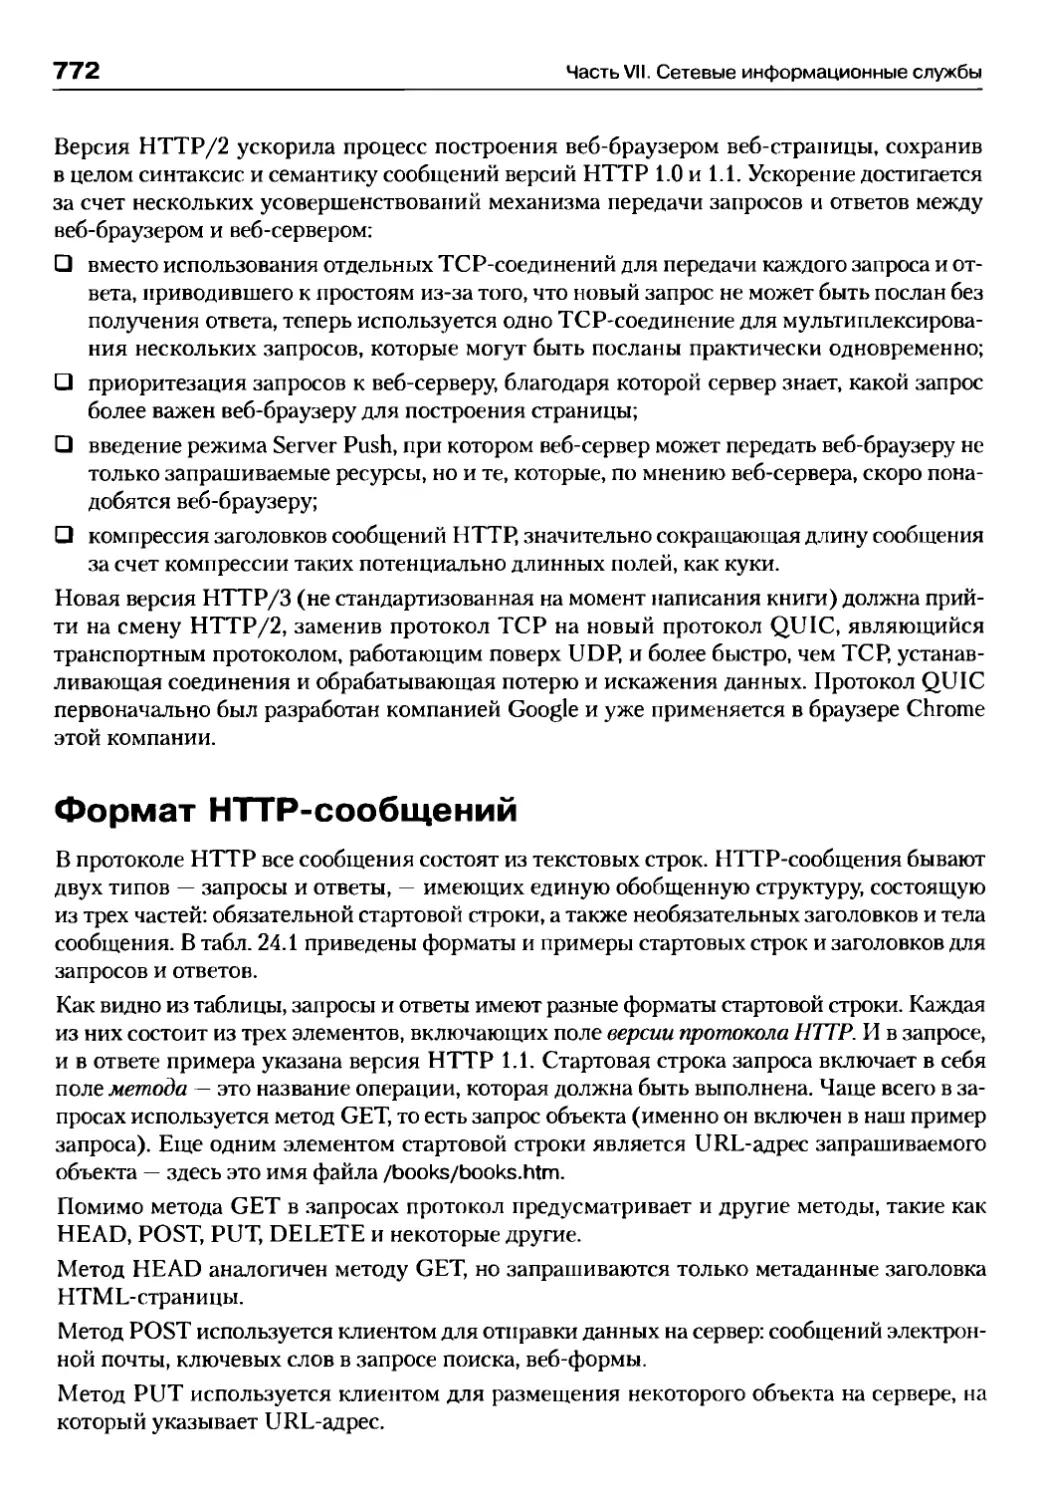 Формат HTTP-сообщений